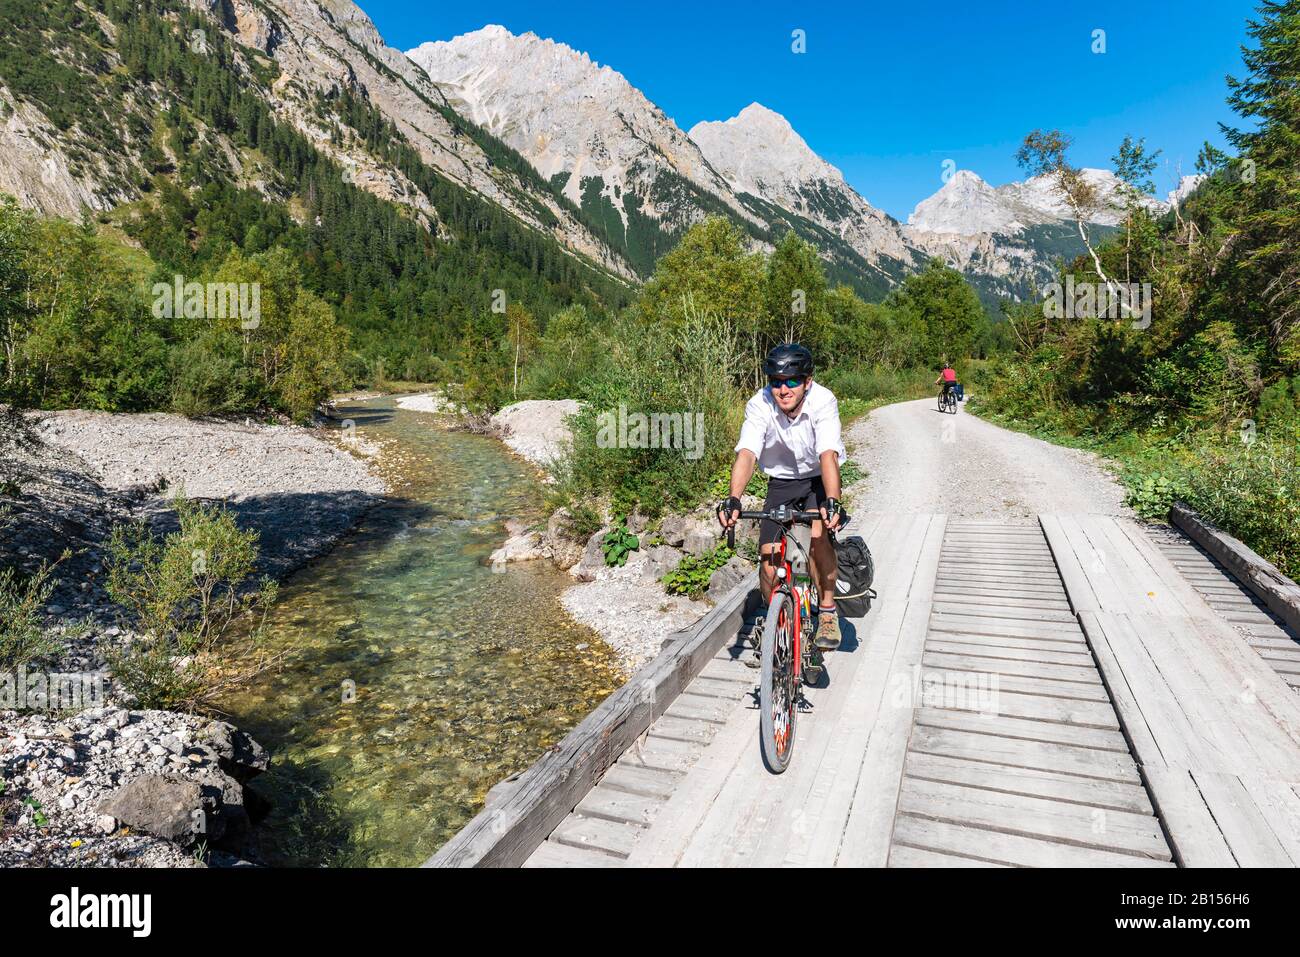 Cycliste cycliste, VTT sur le pont au-dessus du ruisseau de montagne, chemin de gravier à Karwendelhaus, vallée de Karwendel, Tyrol, Autriche Banque D'Images